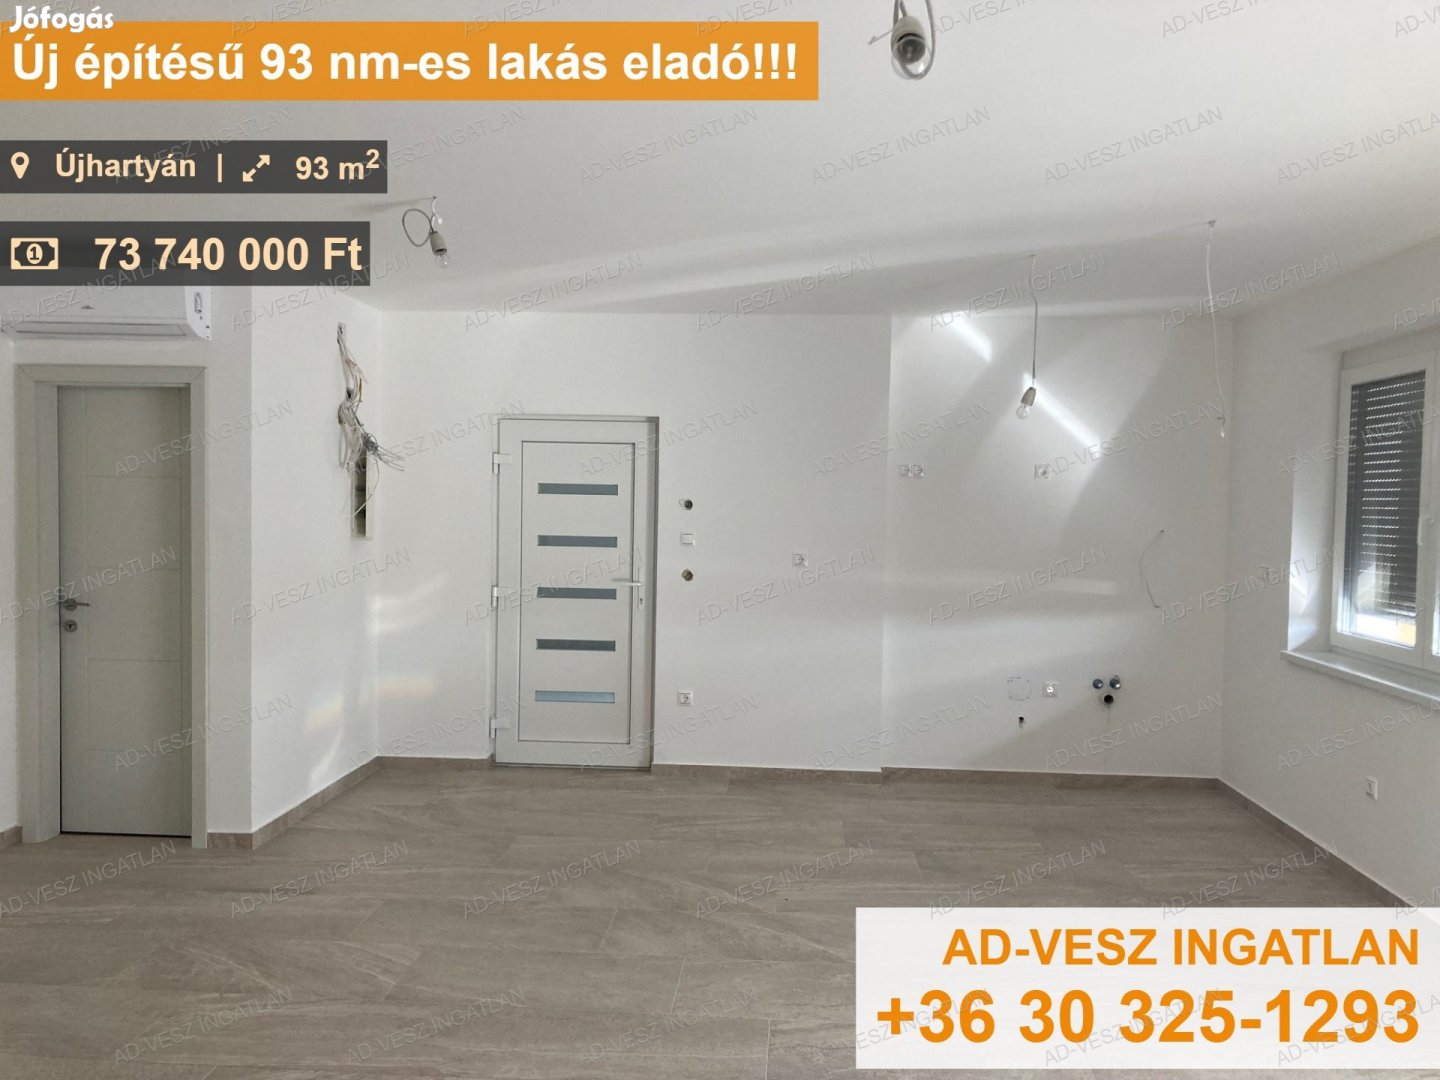 Újhartyánon új építésű 93 nm-es emeleti lakás eladó!!!